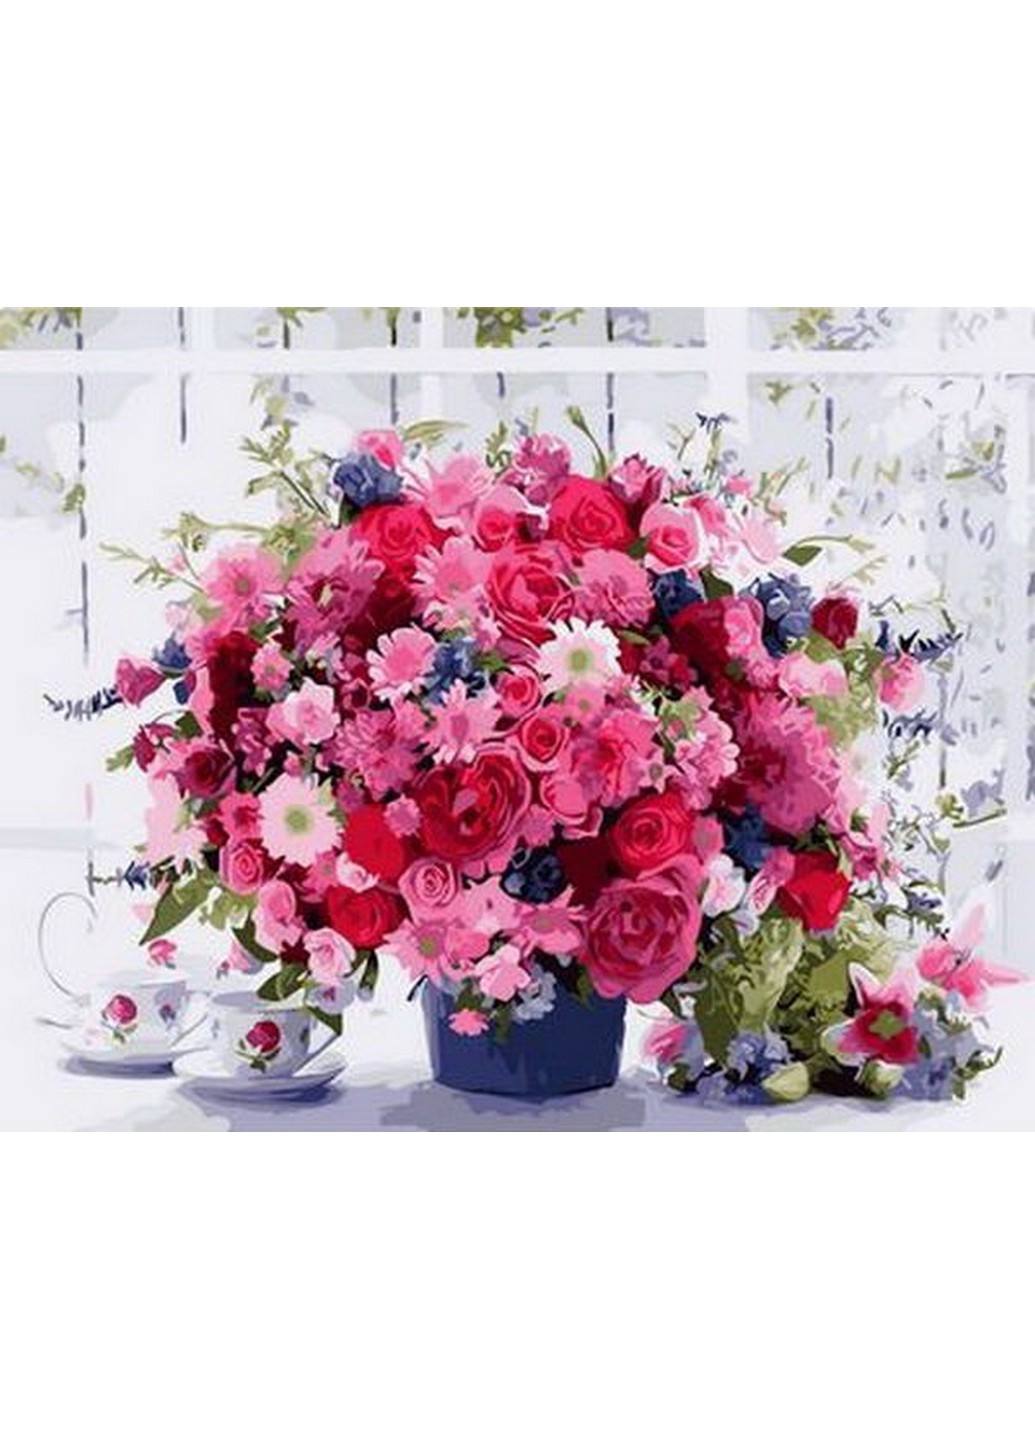 Картина по номерам Розовые хризантемы, 40*50 см Mariposa комбинированные